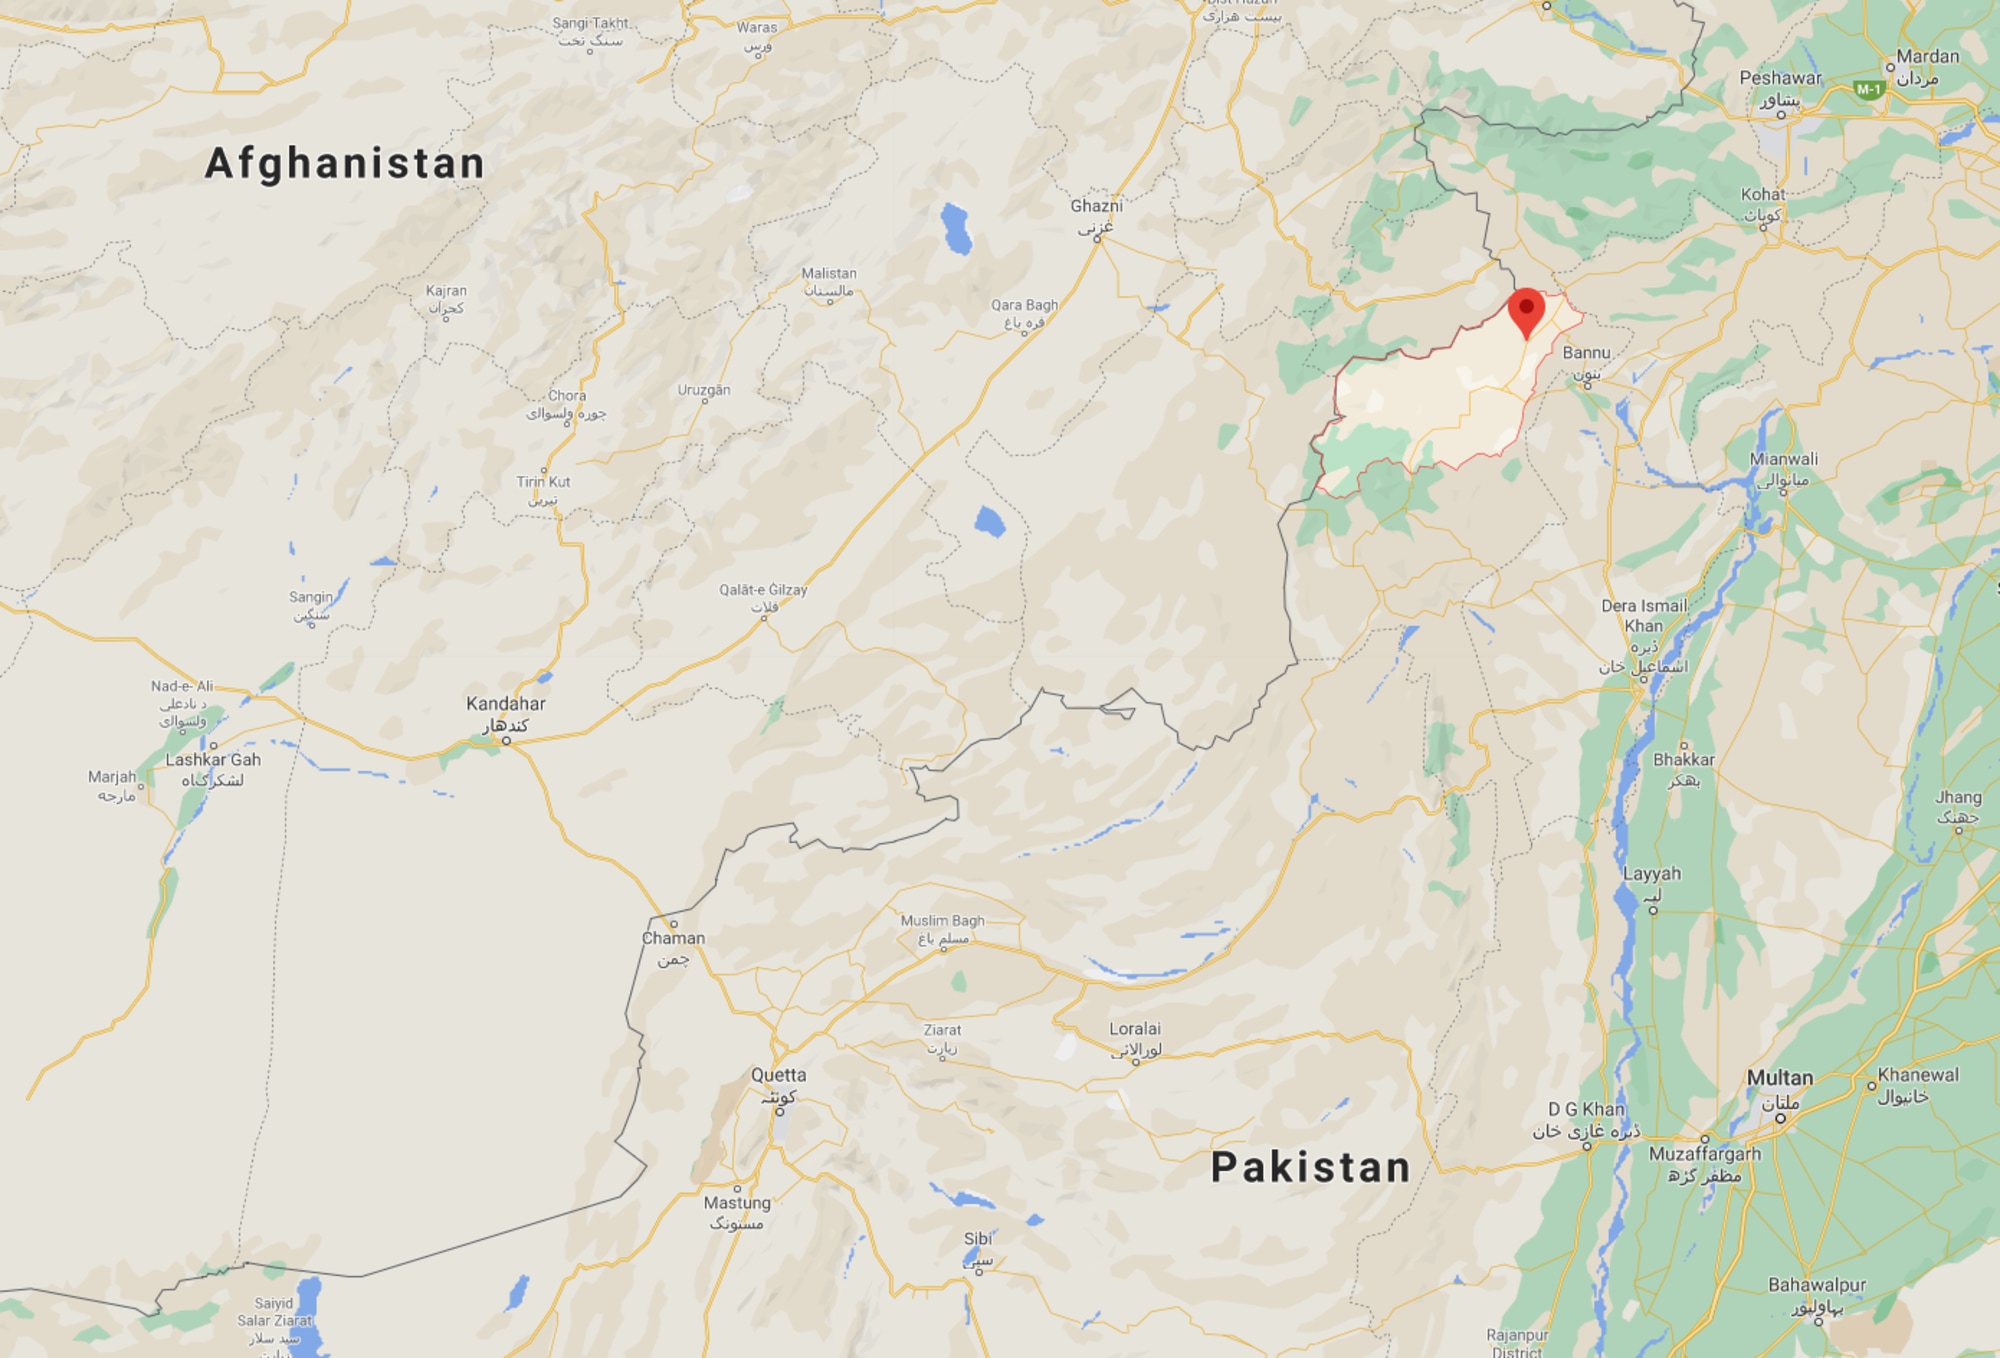 Four Women Who Ran Empowerment Workshops Killed by Gunmen in Pakistan